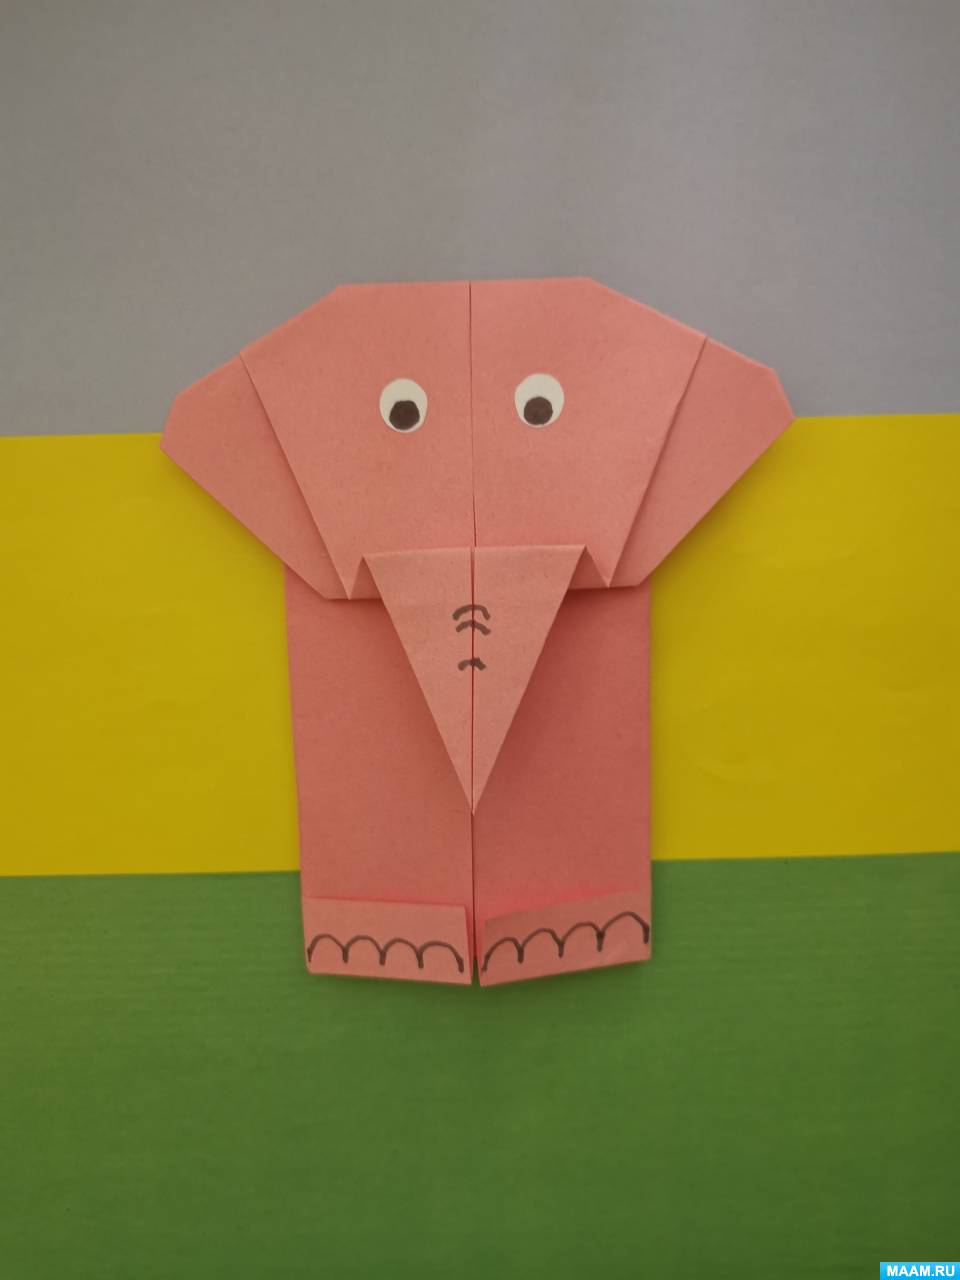 Оригами из бумаги для детей - как делать (простые схемы поделок)